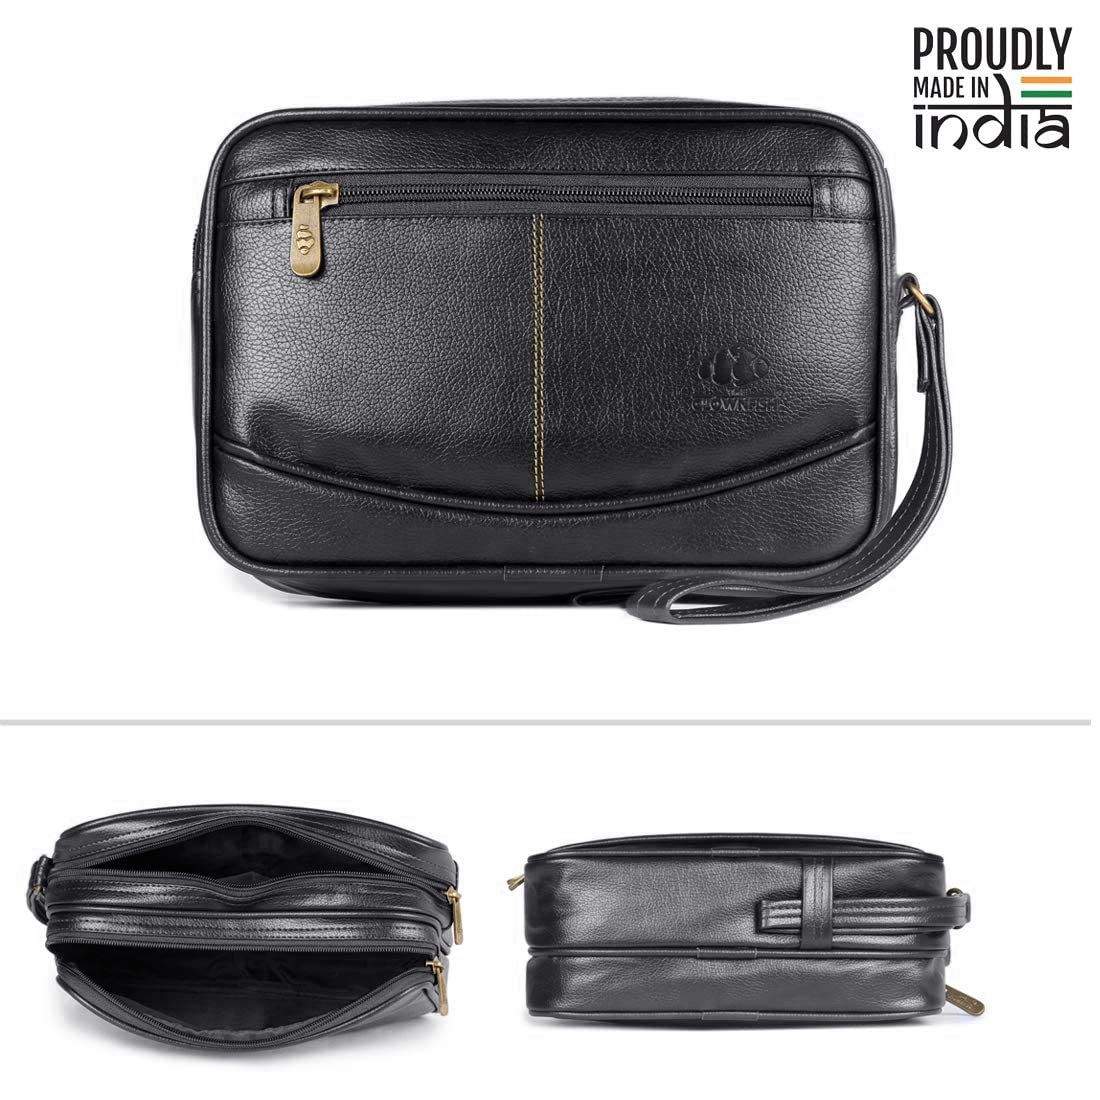 The Clownfish Multipurpose Travel Pouch Cash Money Pouch Wrist Handbag for Men (Black)